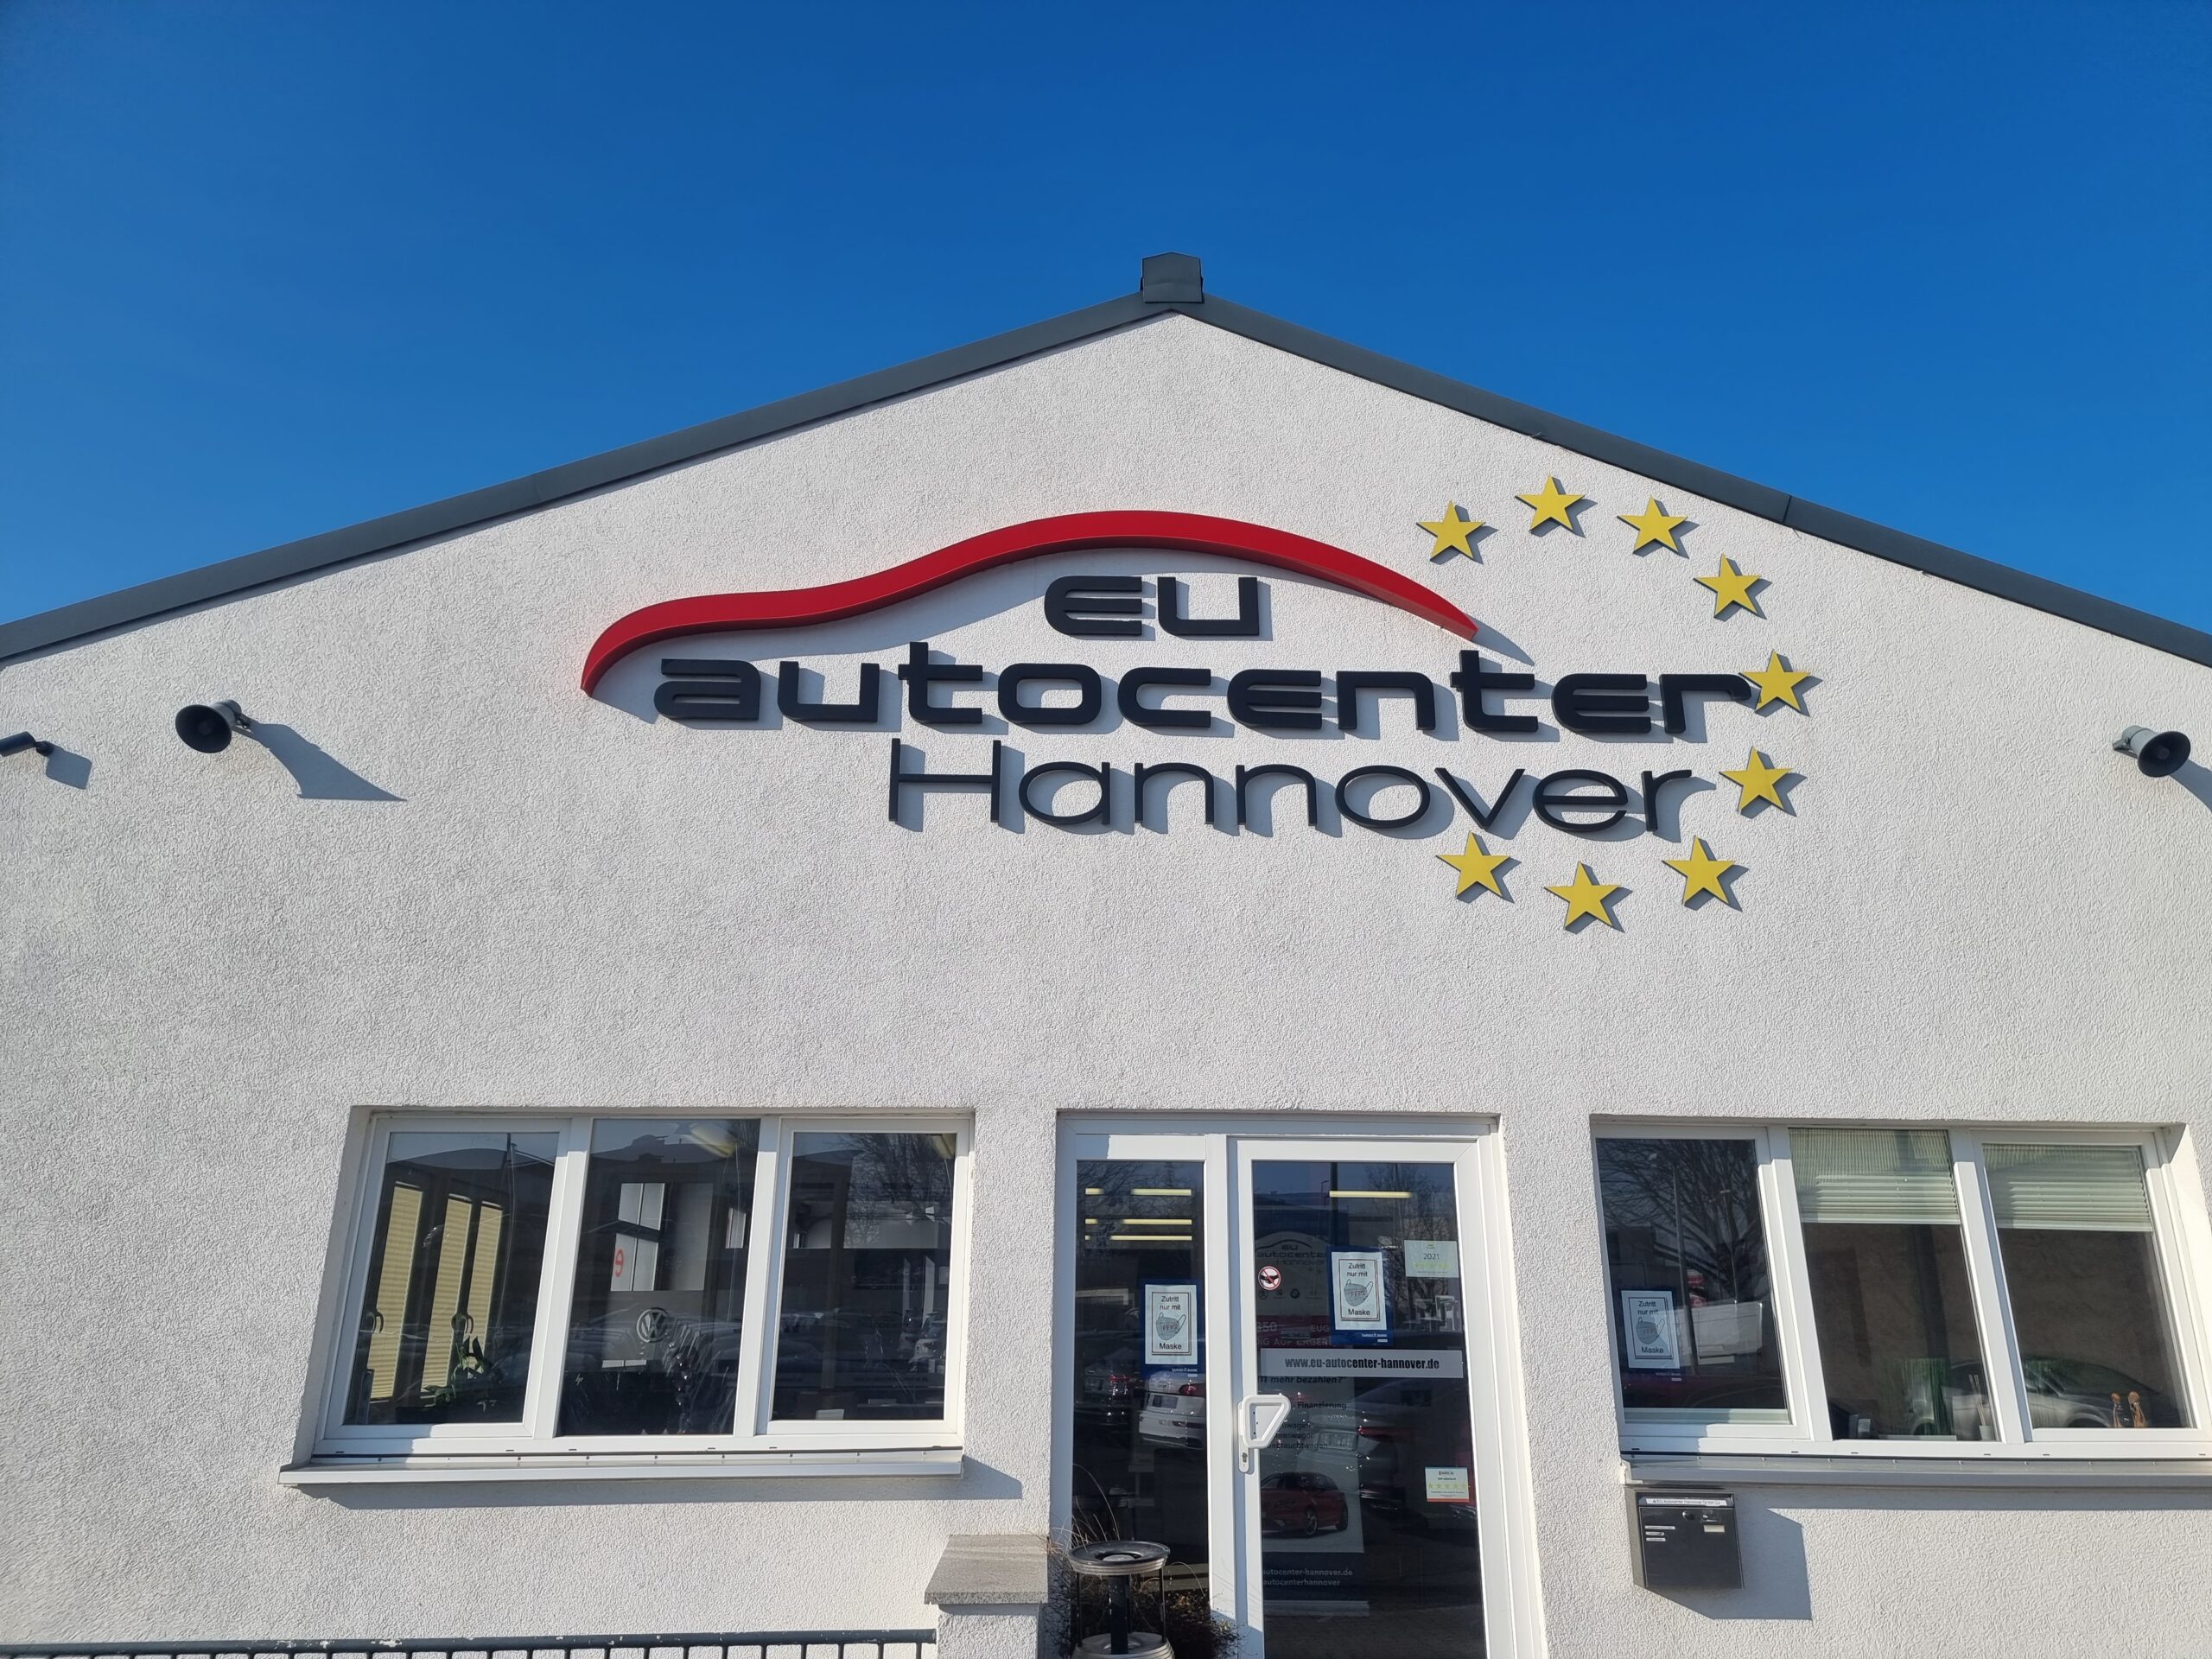 EU-Autocenter-Hannover